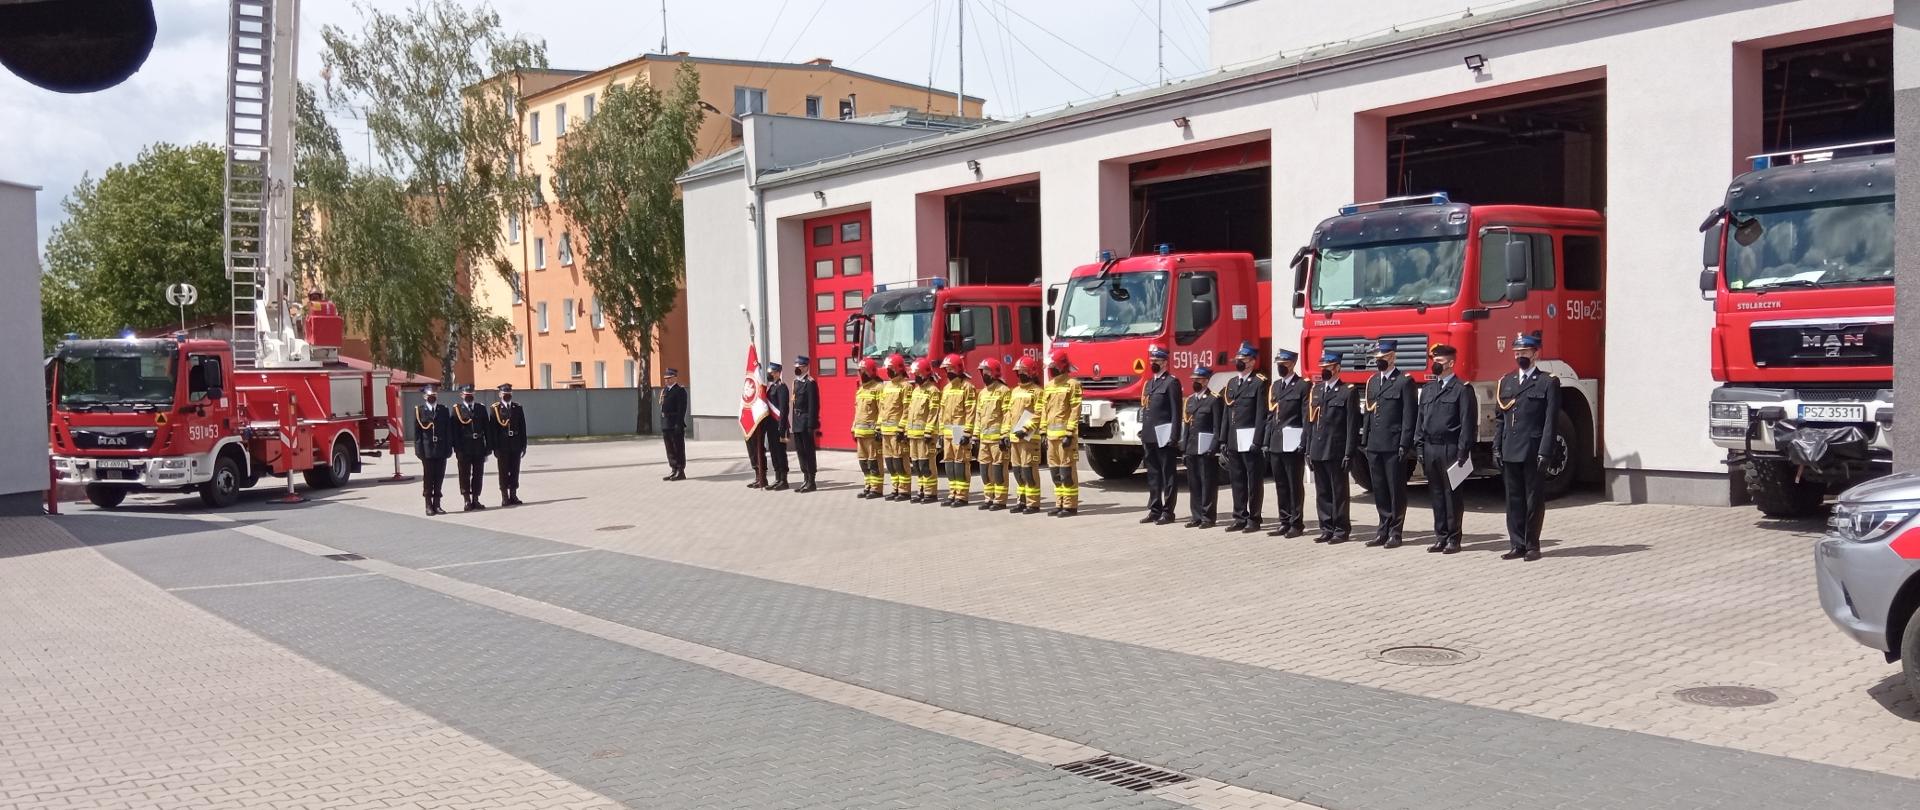 Po lewej jest podnośnik straży pożarnej, przed nim jest trzech strażaków z pocztu flagowego, na środku jest sztandar i strażacy podczas uroczystego apelu, za nimi cztery czerwone samochody straży 